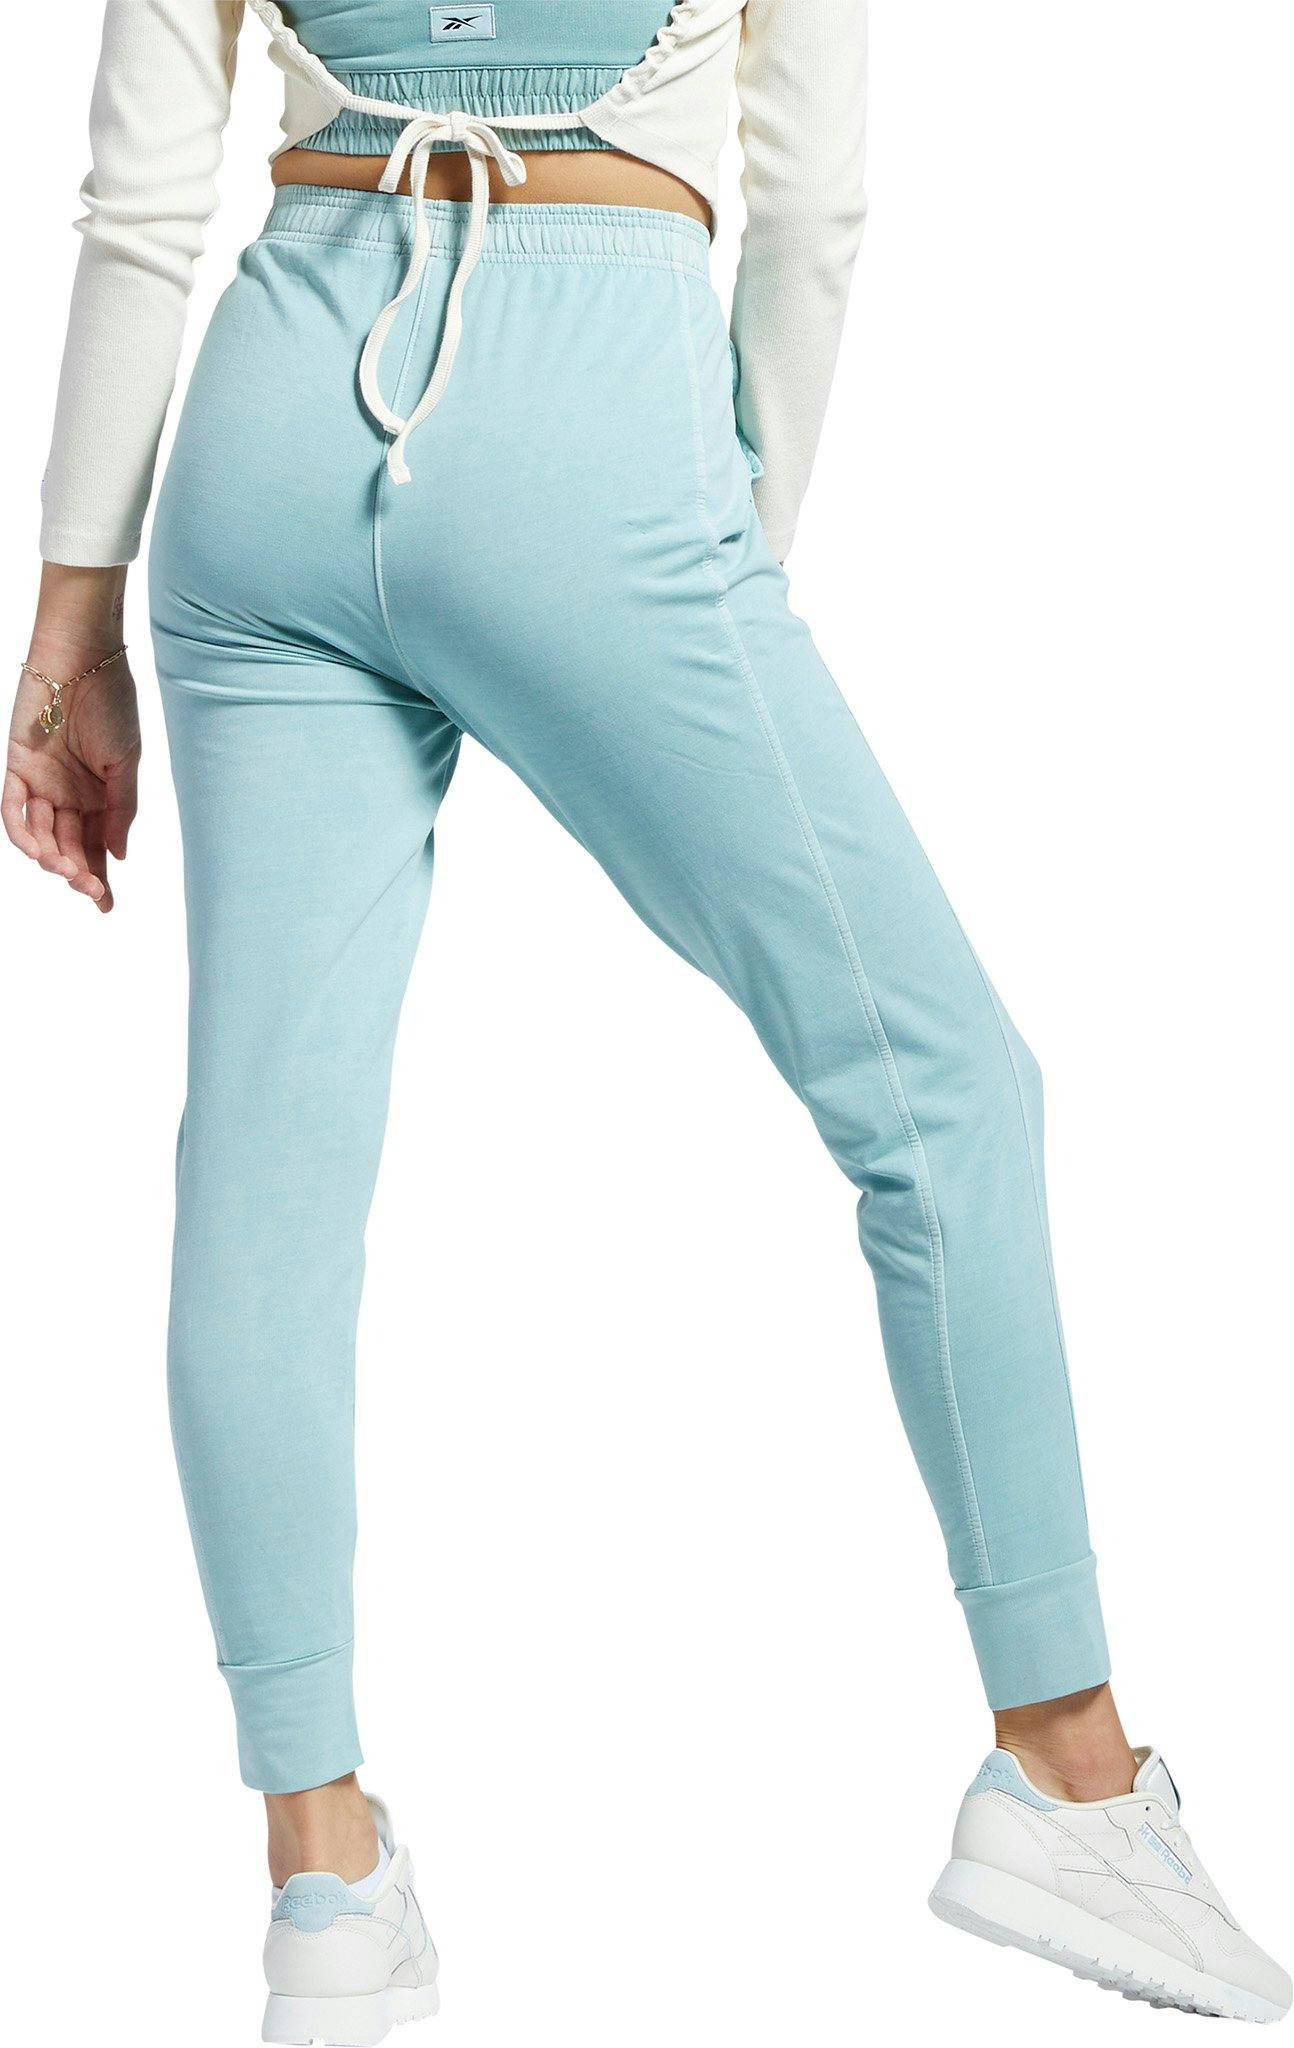 Numéro de l'image de la galerie de produits 2 pour le produit Pantalon jogger ajusté teinture naturelle Classics - Femme